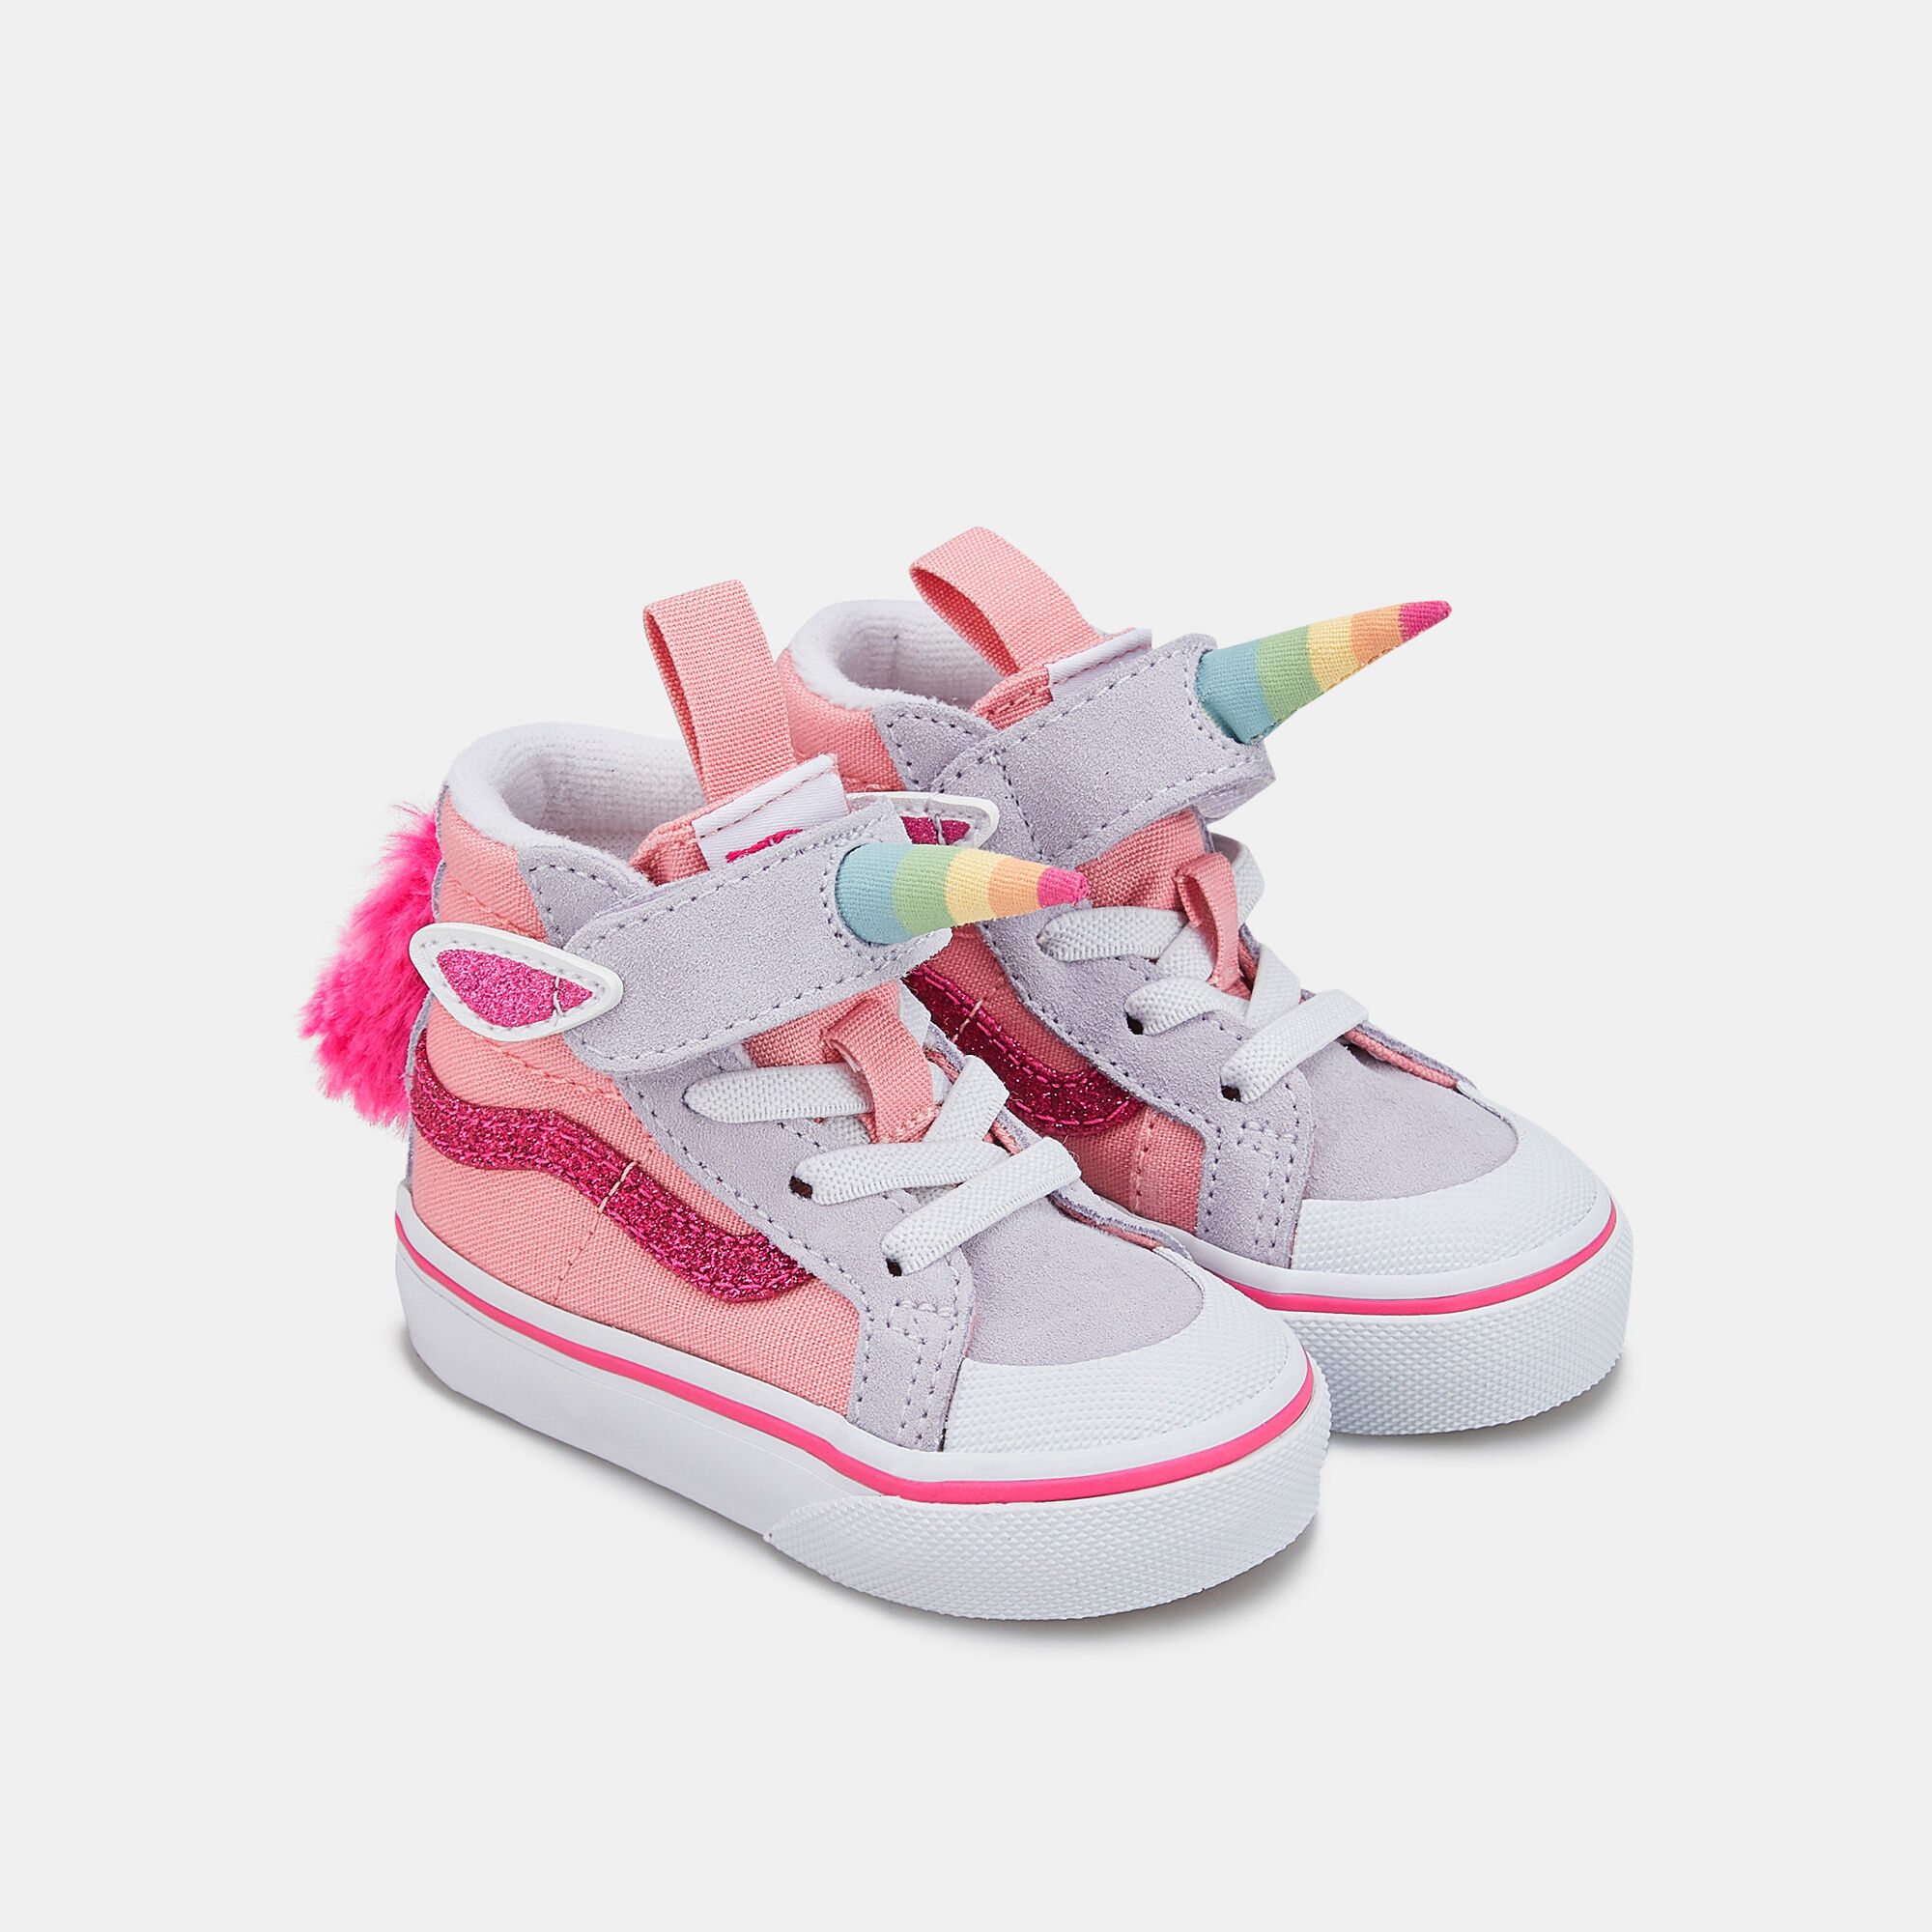 Buy Vans Kids' Unicorn SK8Hi Reissue 138 V Shoe (Baby and